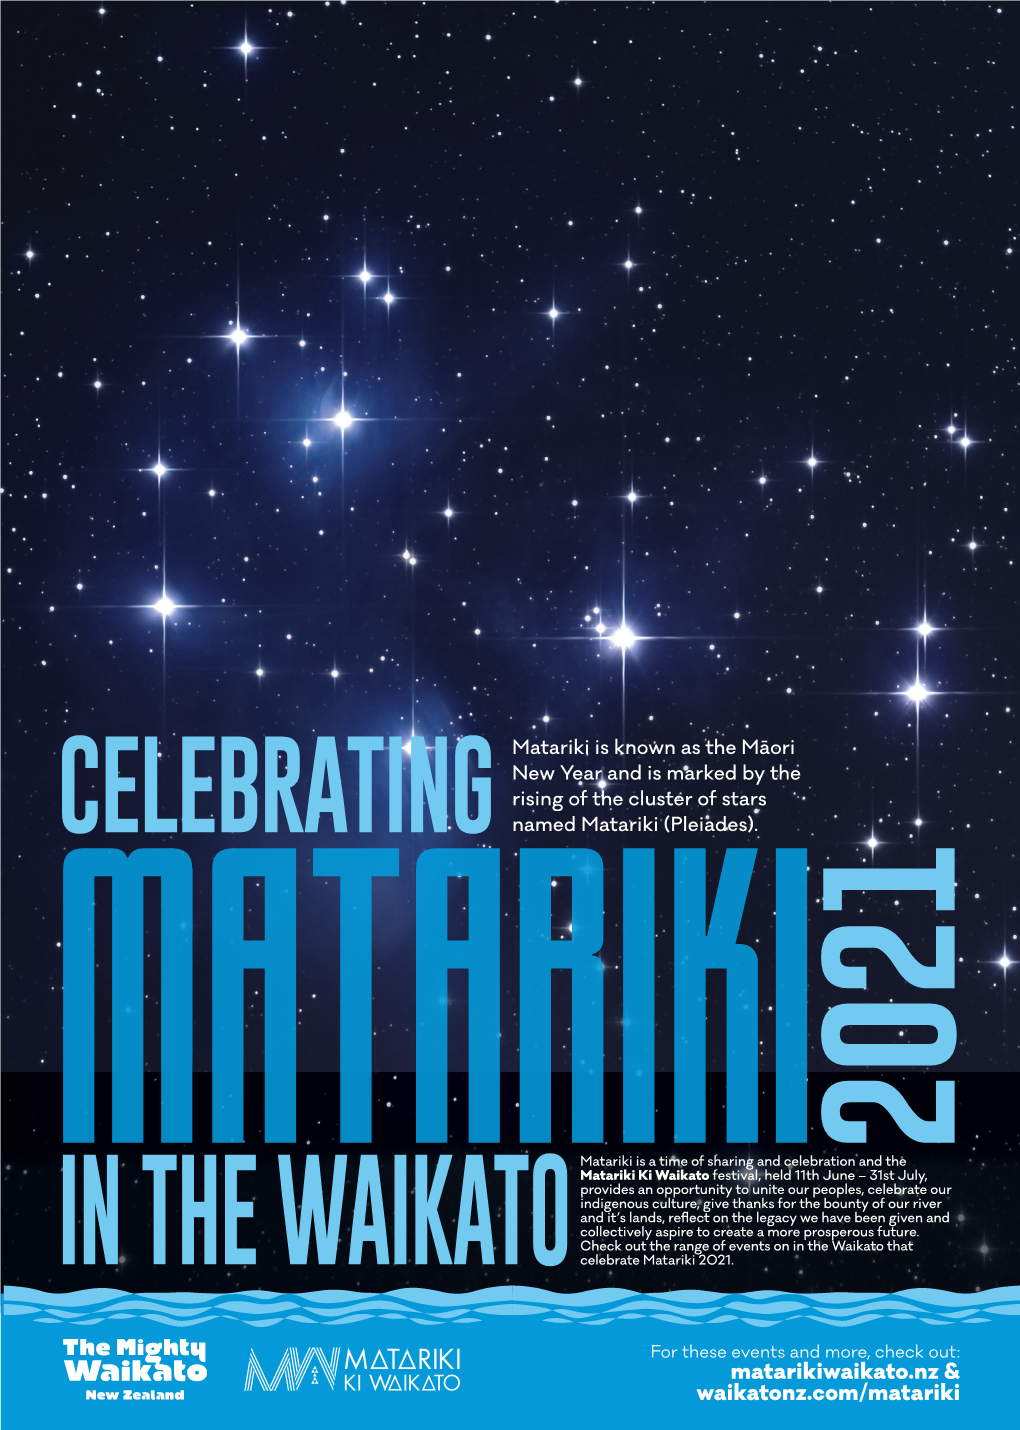 Celebrating Matariki 2021 in the Waikato